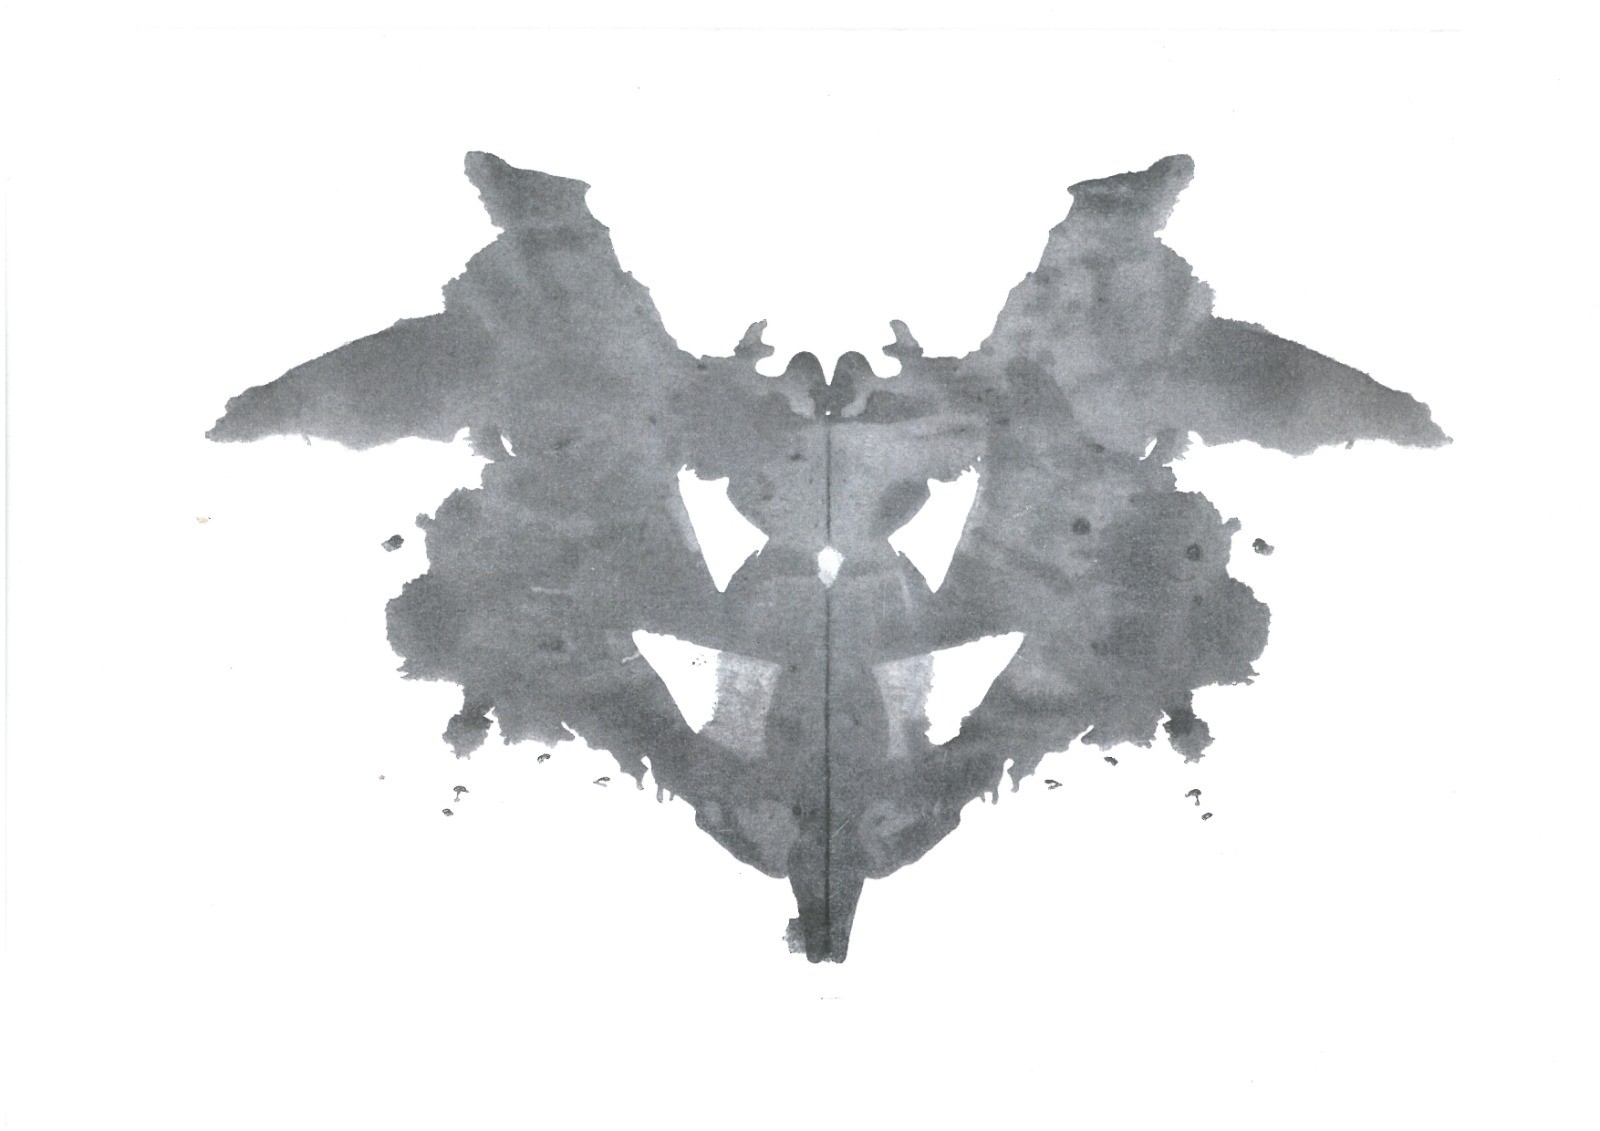 As imagens do teste de Rorschach — Foto: Reprodução